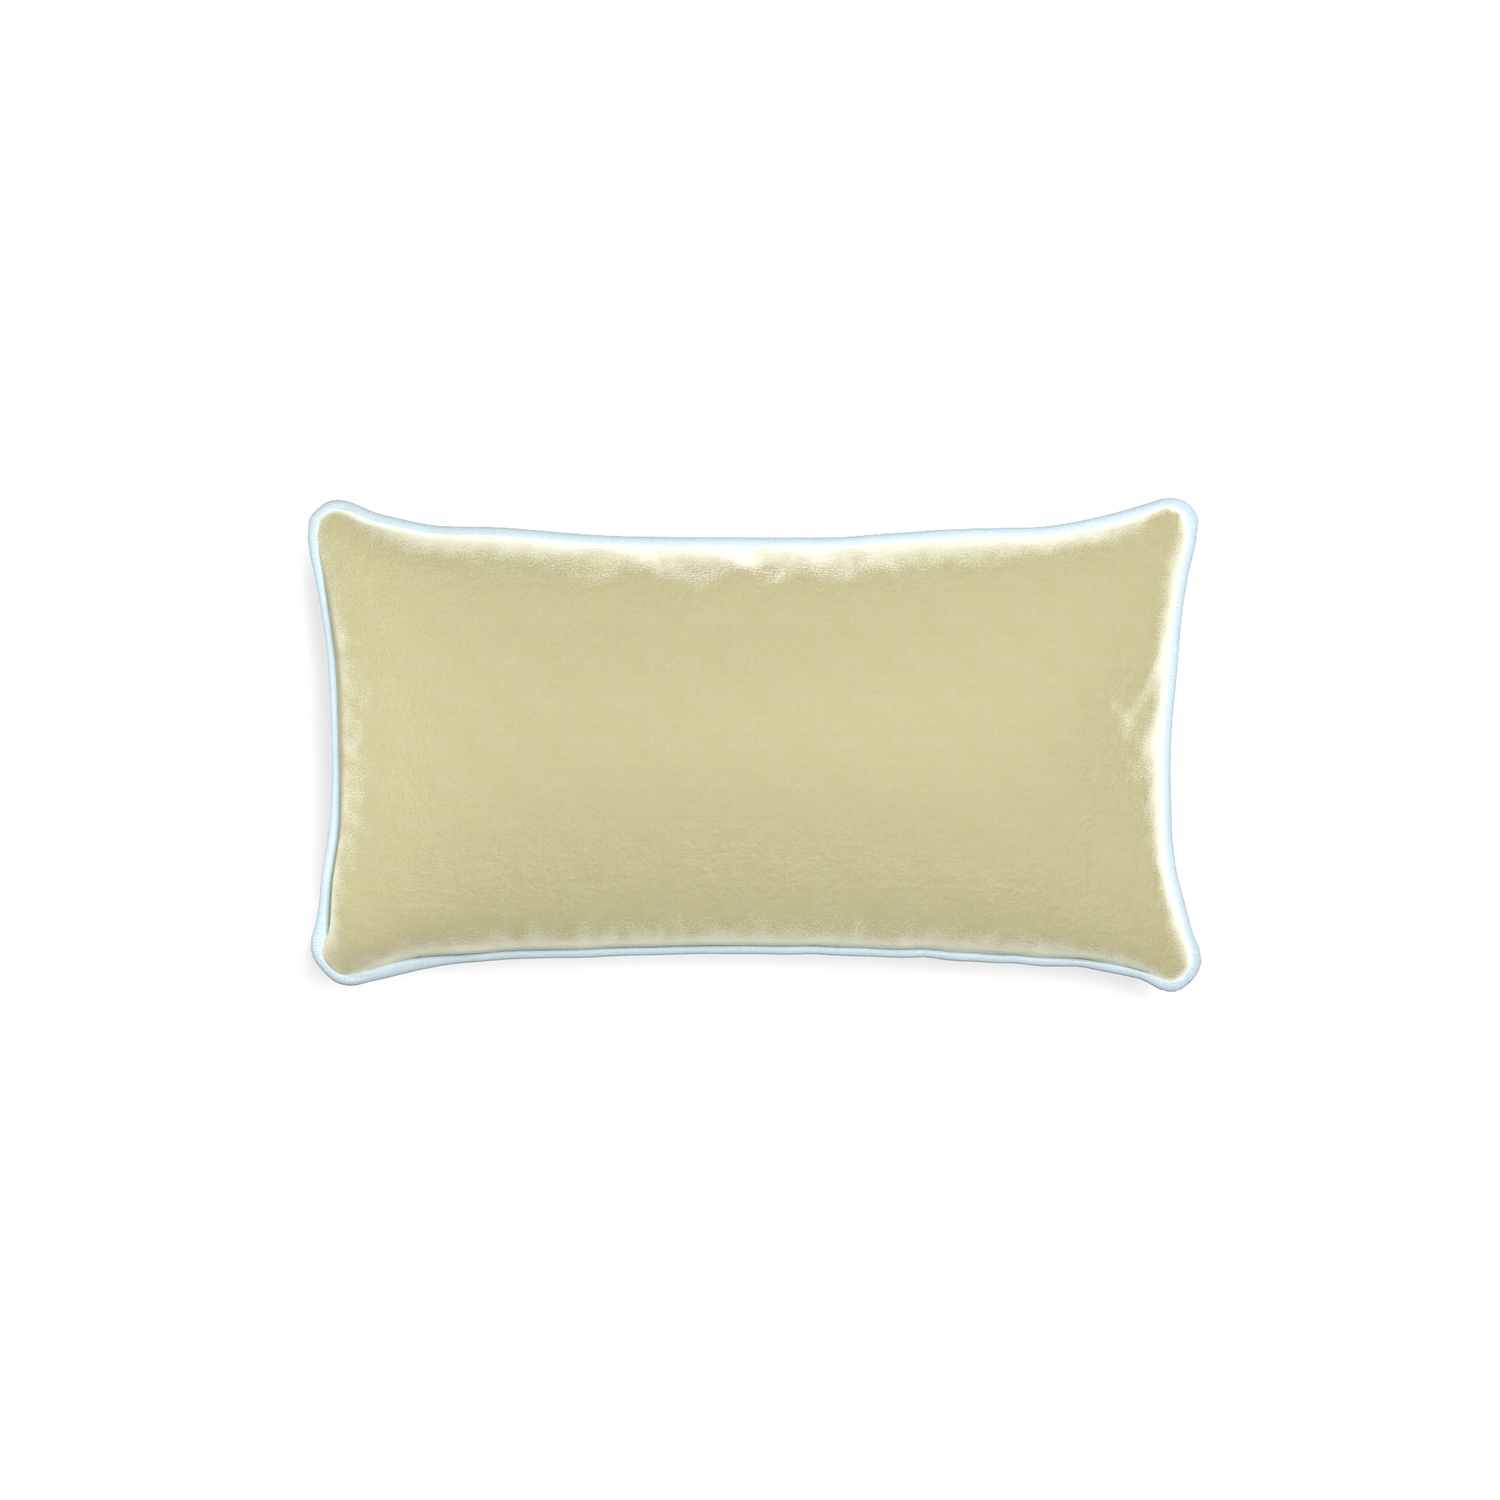 rectangle light green velvet pillow with light blue piping